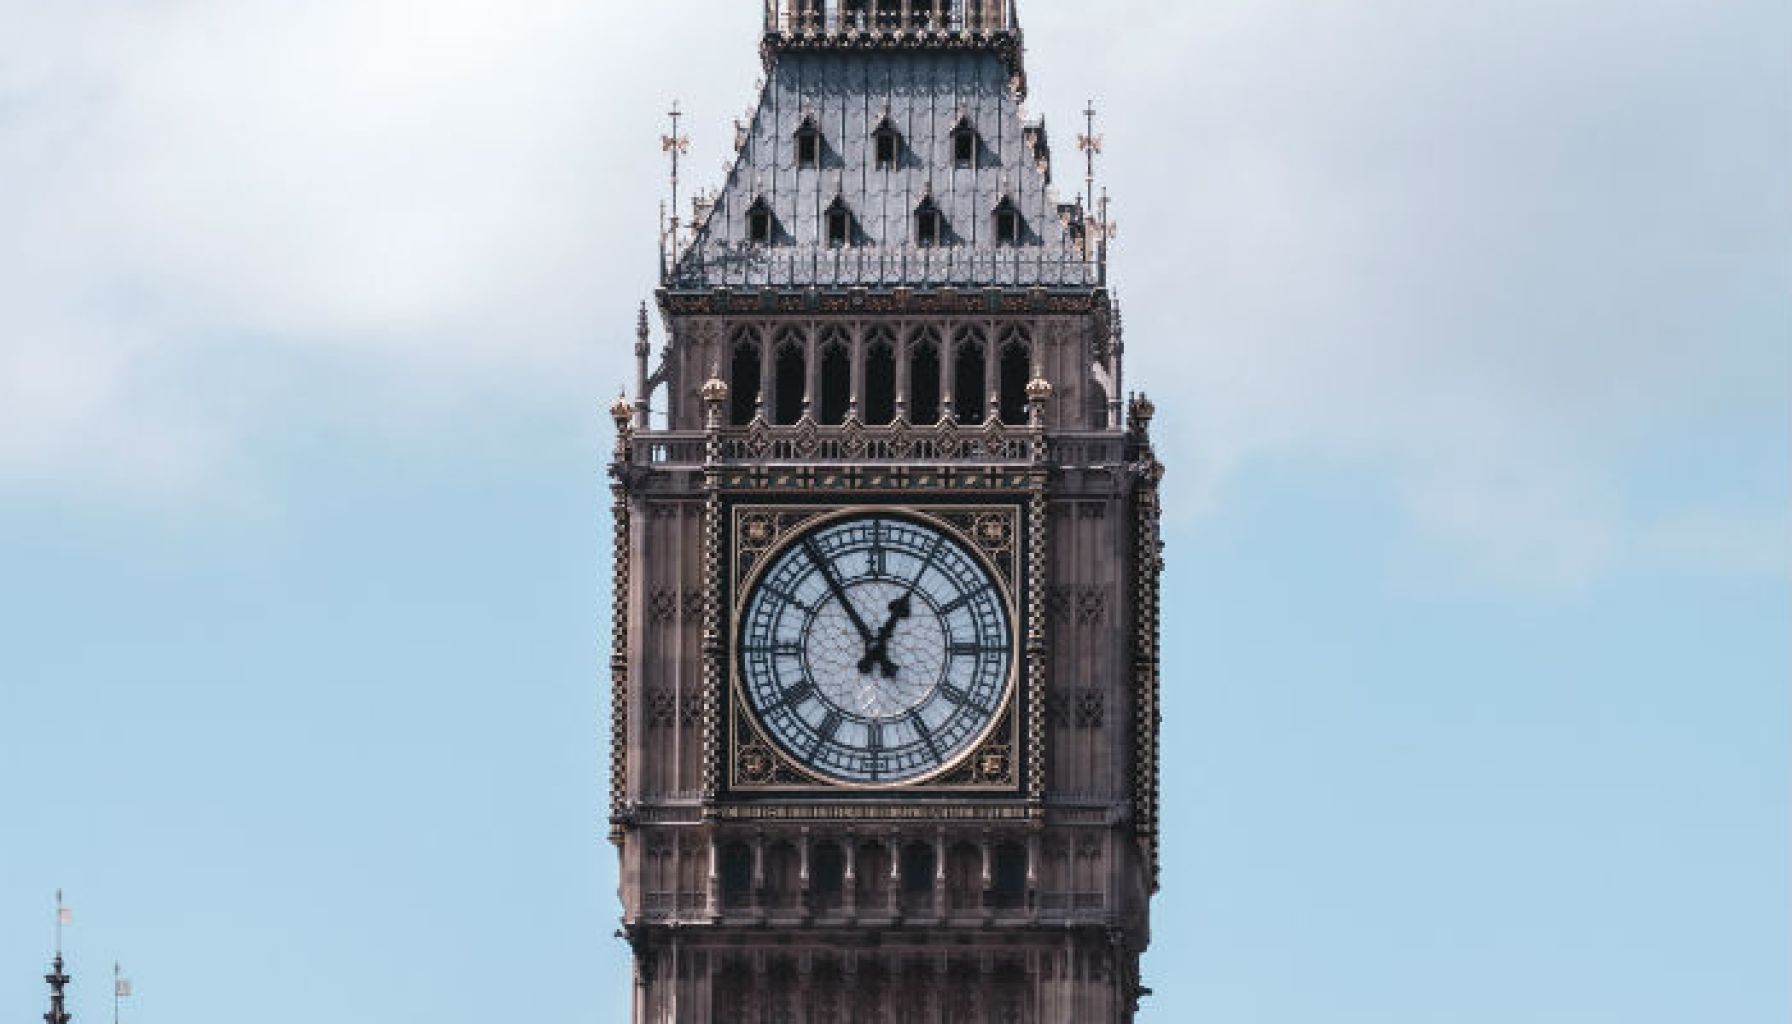 Parliamentary-buildings-Big-Ben-in-London-United-Kingdom.jpg